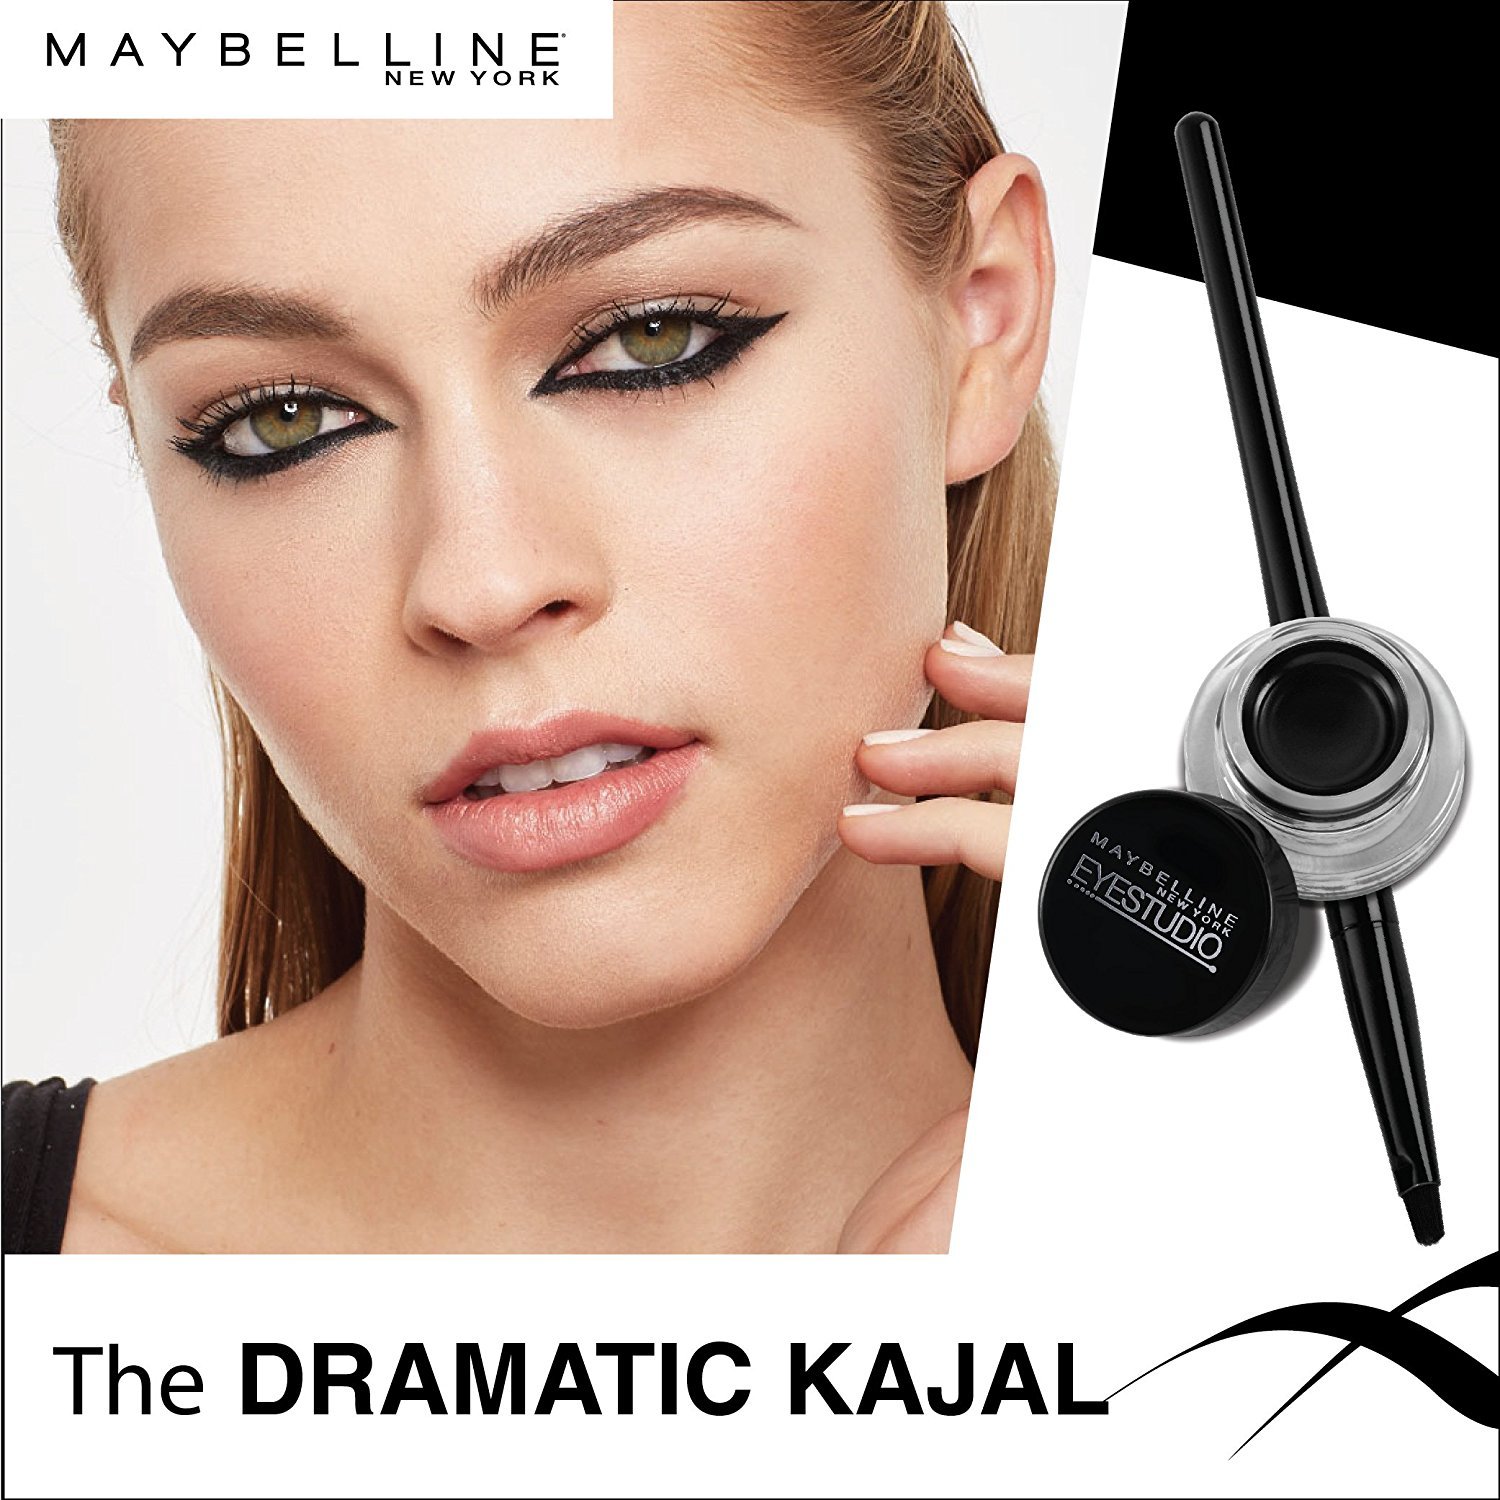 Maybelline New York Makeup Eyestudio Lasting Drama Gel Eye Liner, Blackest Black, Waterproof, 0.106 Ounce,Pack of 1